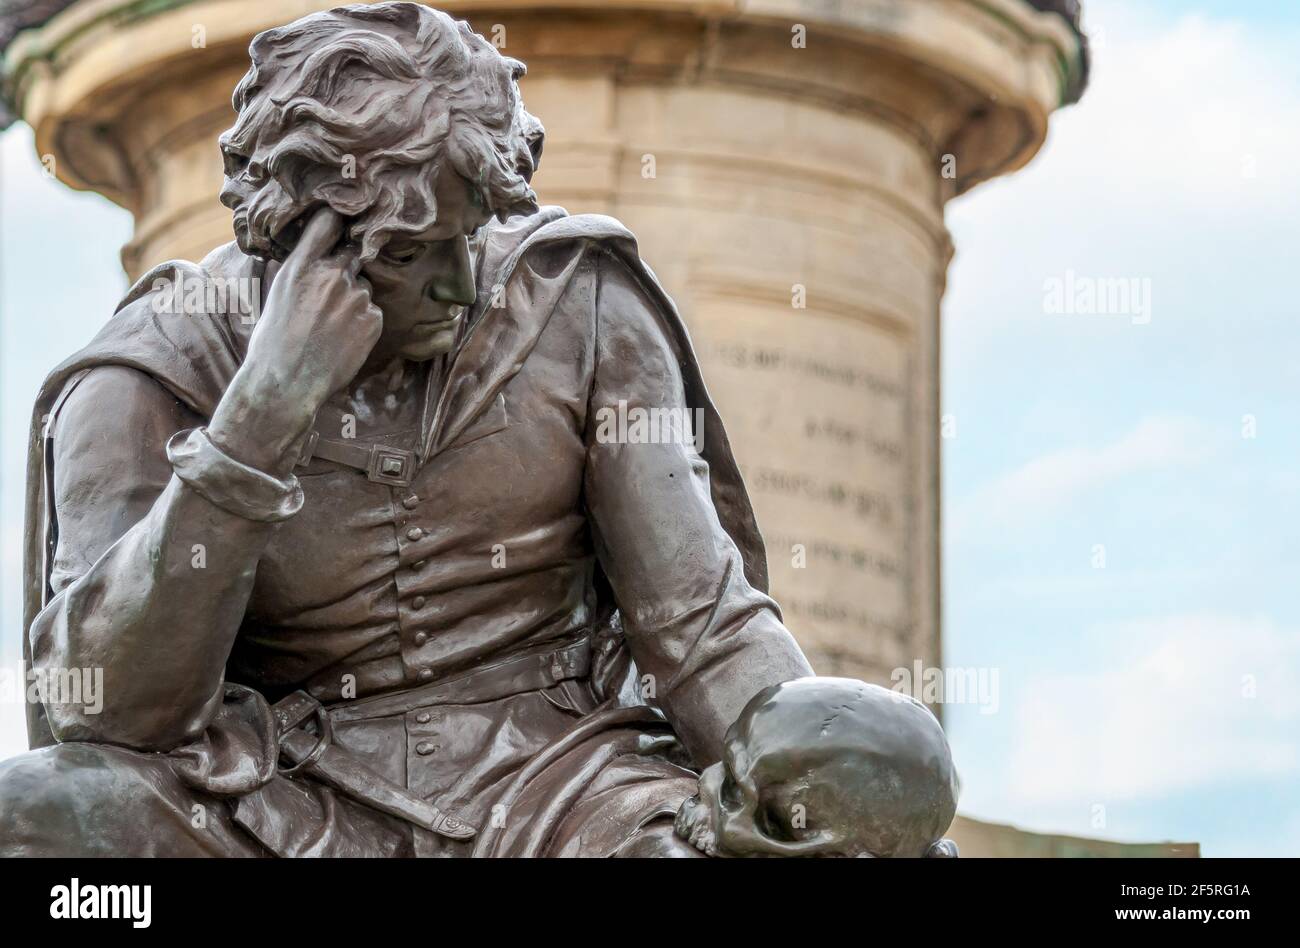 Primo piano della statua di Hamlet di Sir Ronald Gower a Stratford-upon-Avon, Inghilterra, Regno Unito Foto Stock